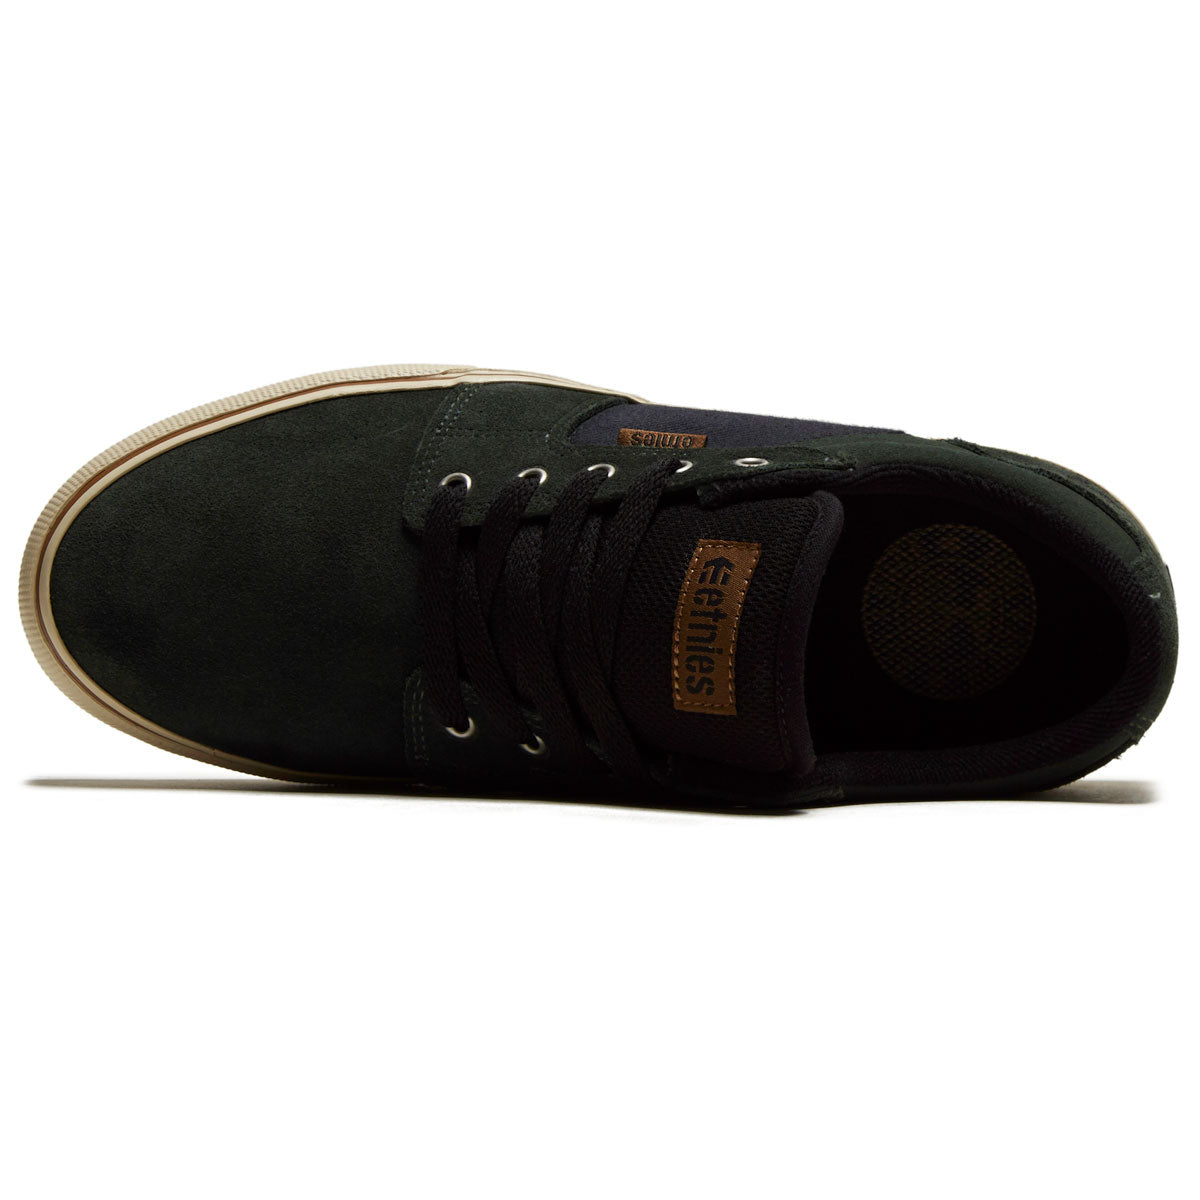 Etnies Barge Ls Shoes - Green/Black image 3